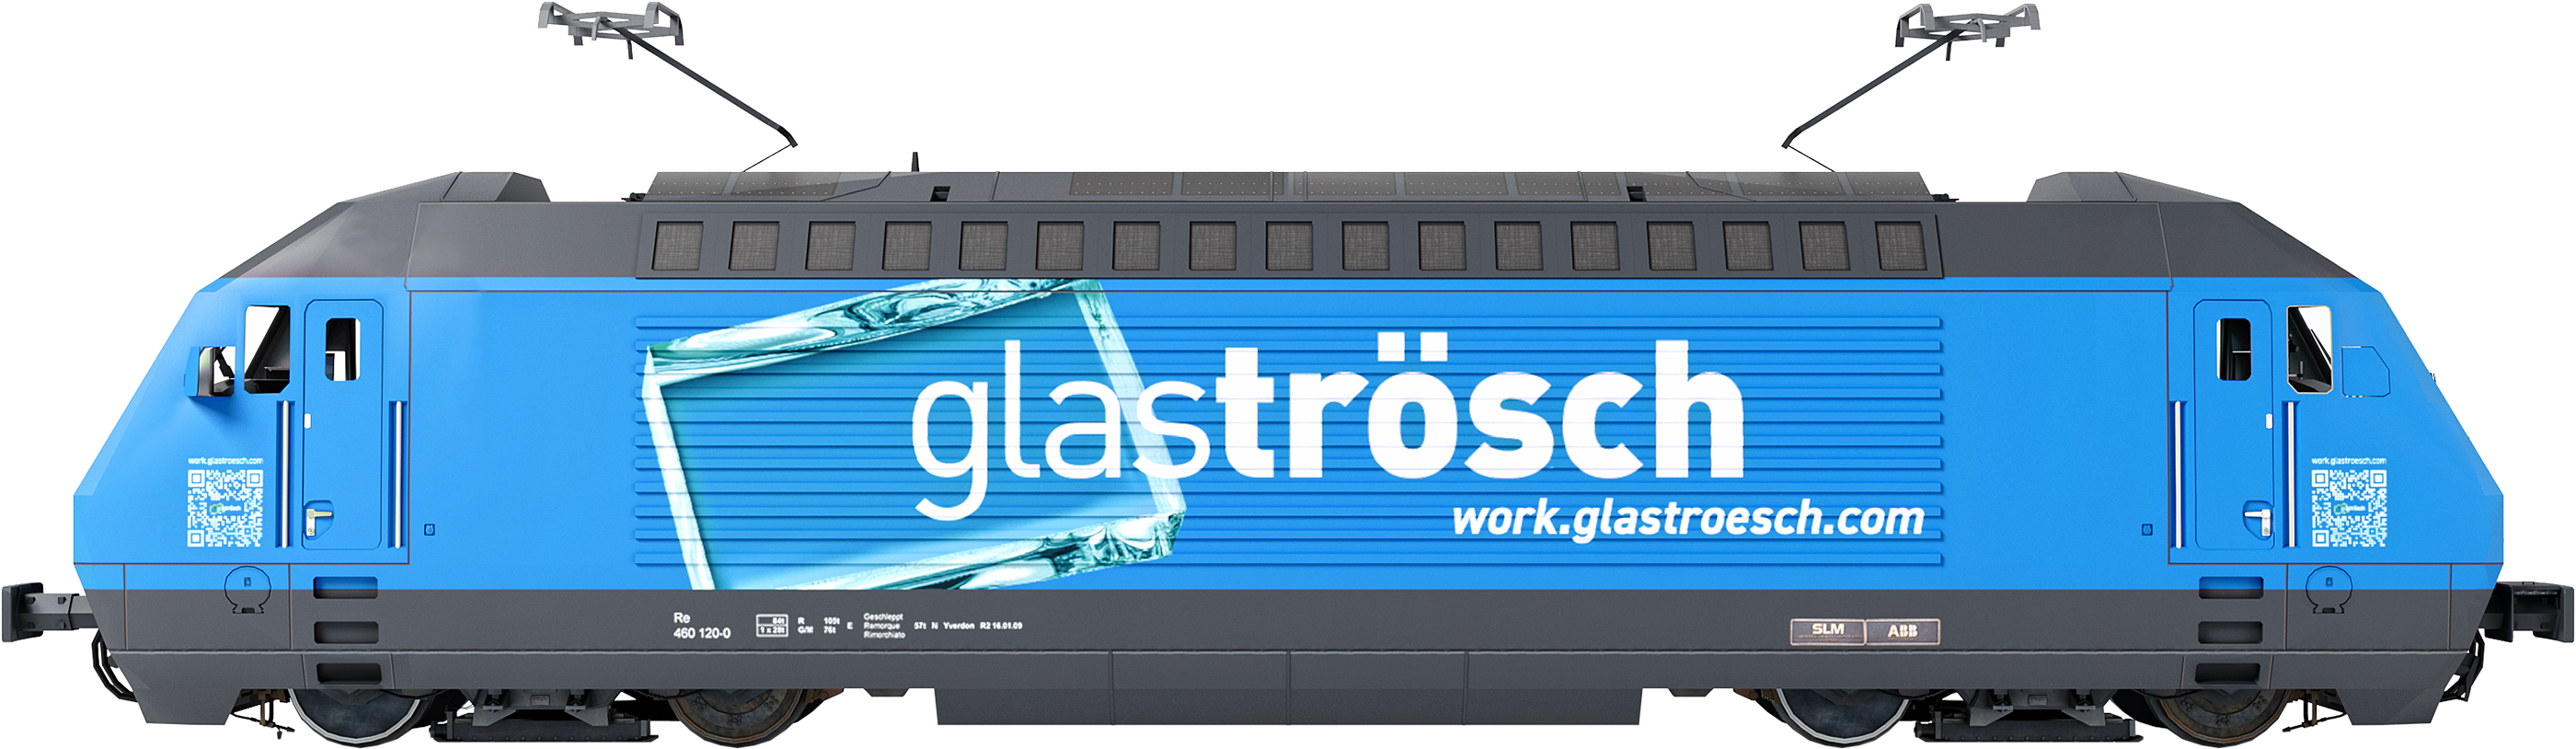 Glaströsch Train